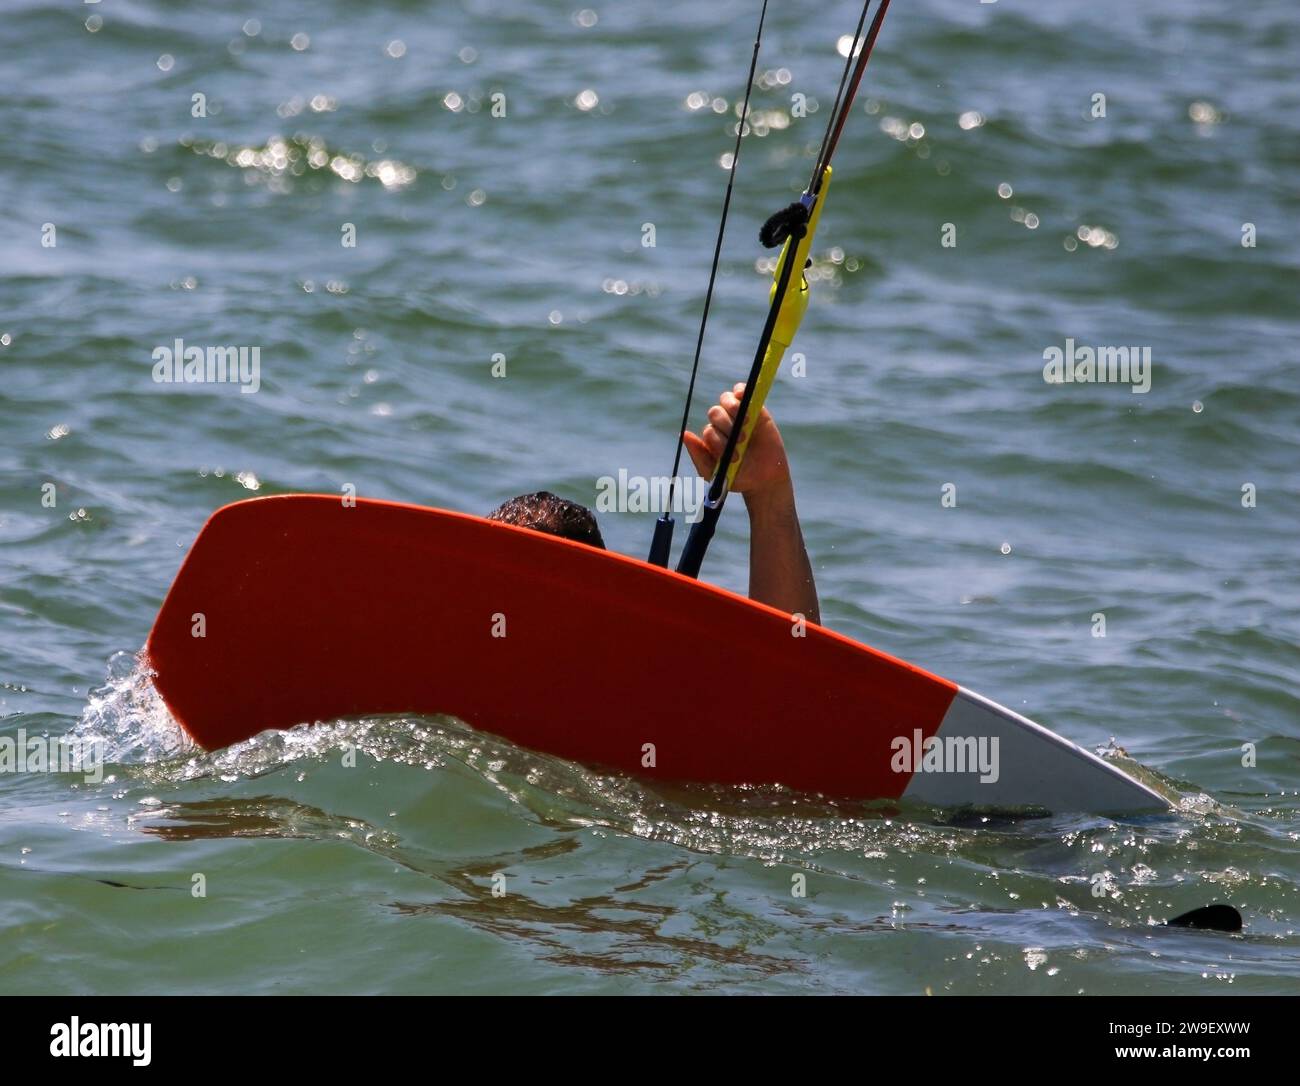 Gros plan d'une personne sur une planche Kit au-dessus d'un plan d'eau prêt à être tiré vers le haut pour surfer. Banque D'Images